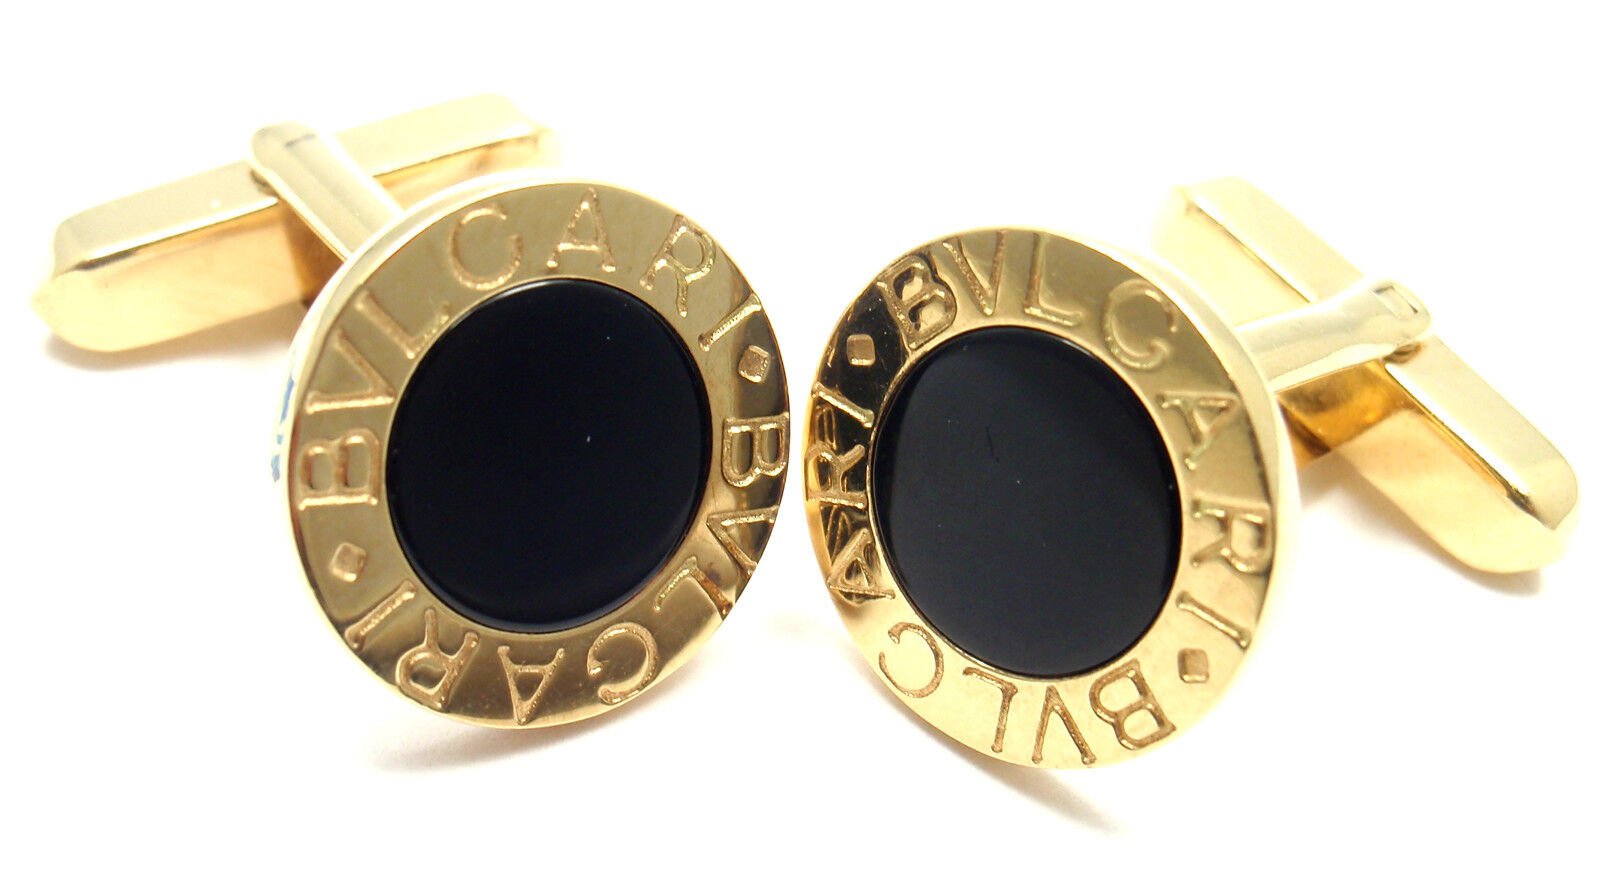 Bulgari Jewelry & Watches:Men's Jewelry:Cufflinks Authentic! Bulgari Bvlgari 18k Yellow Gold Black Onyx Cufflinks